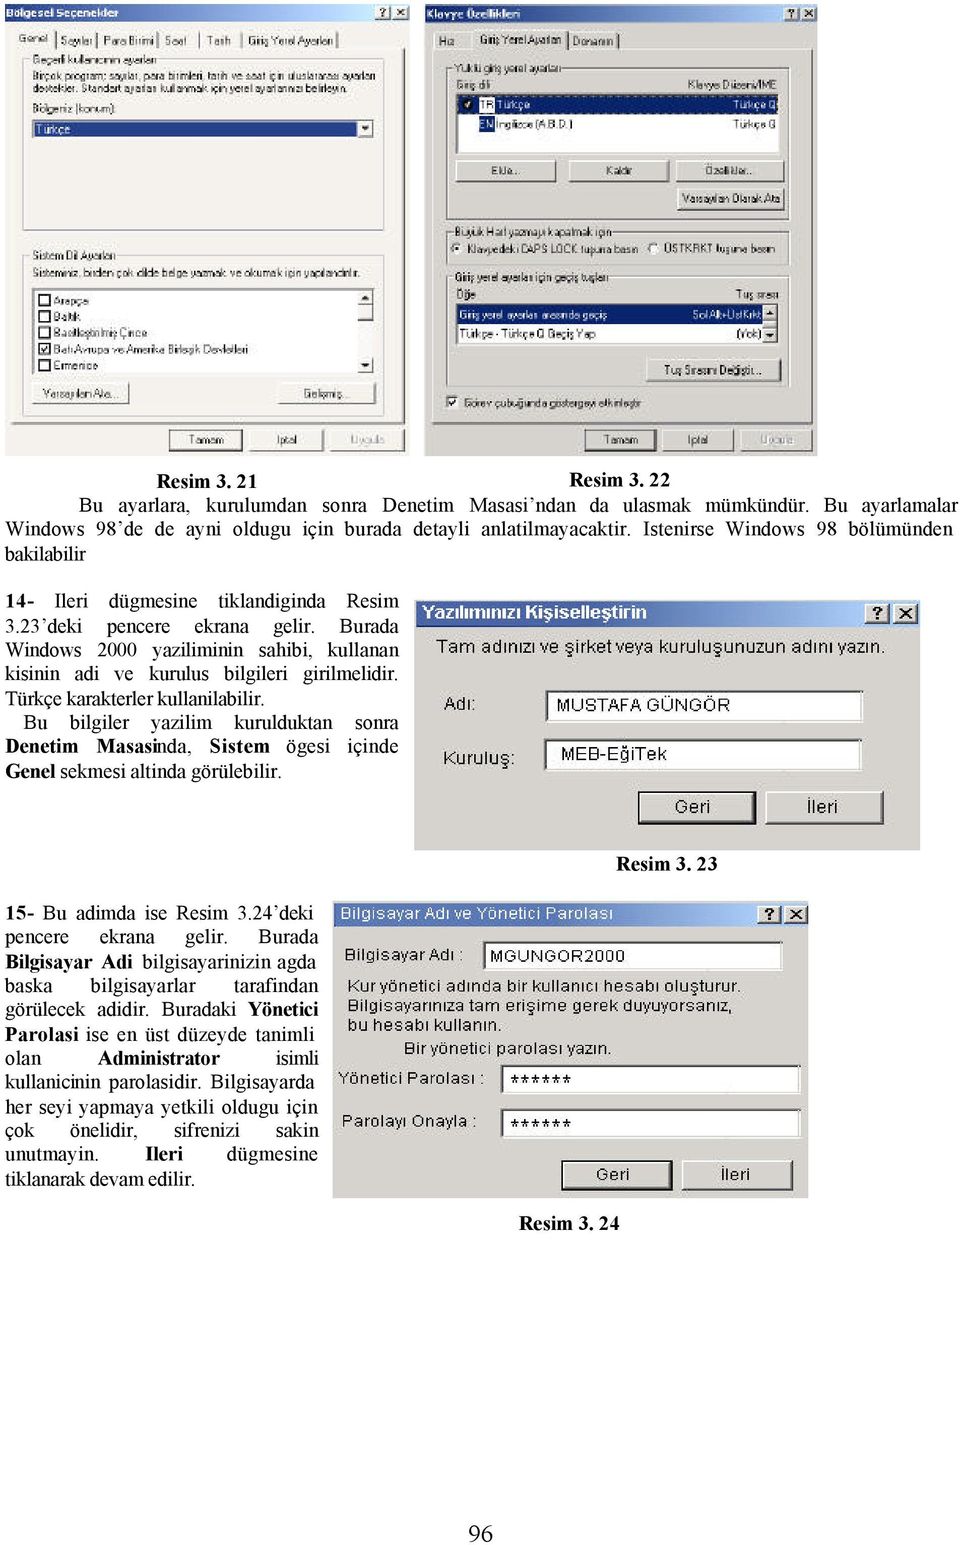 Burada Windows 2000 yaziliminin sahibi, kullanan kisinin adi ve kurulus bilgileri girilmelidir. Türkçe karakterler kullanilabilir.